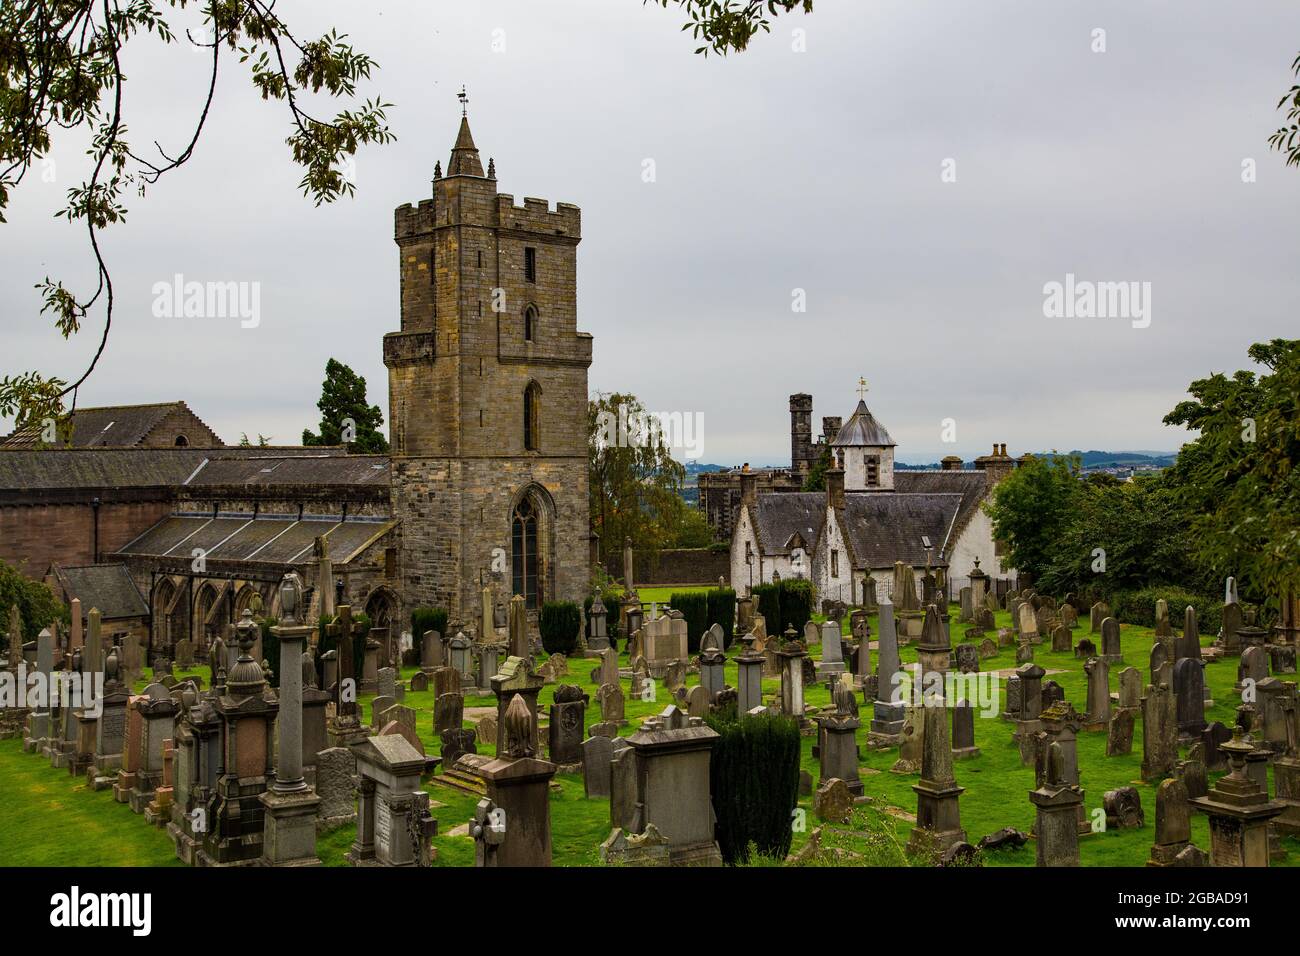 Cementerio de corte gótico con lápidas en forma de piedra y monolitos, en pradera con entrada de barrotes de hierro e iglesia detrás. Stock Photo